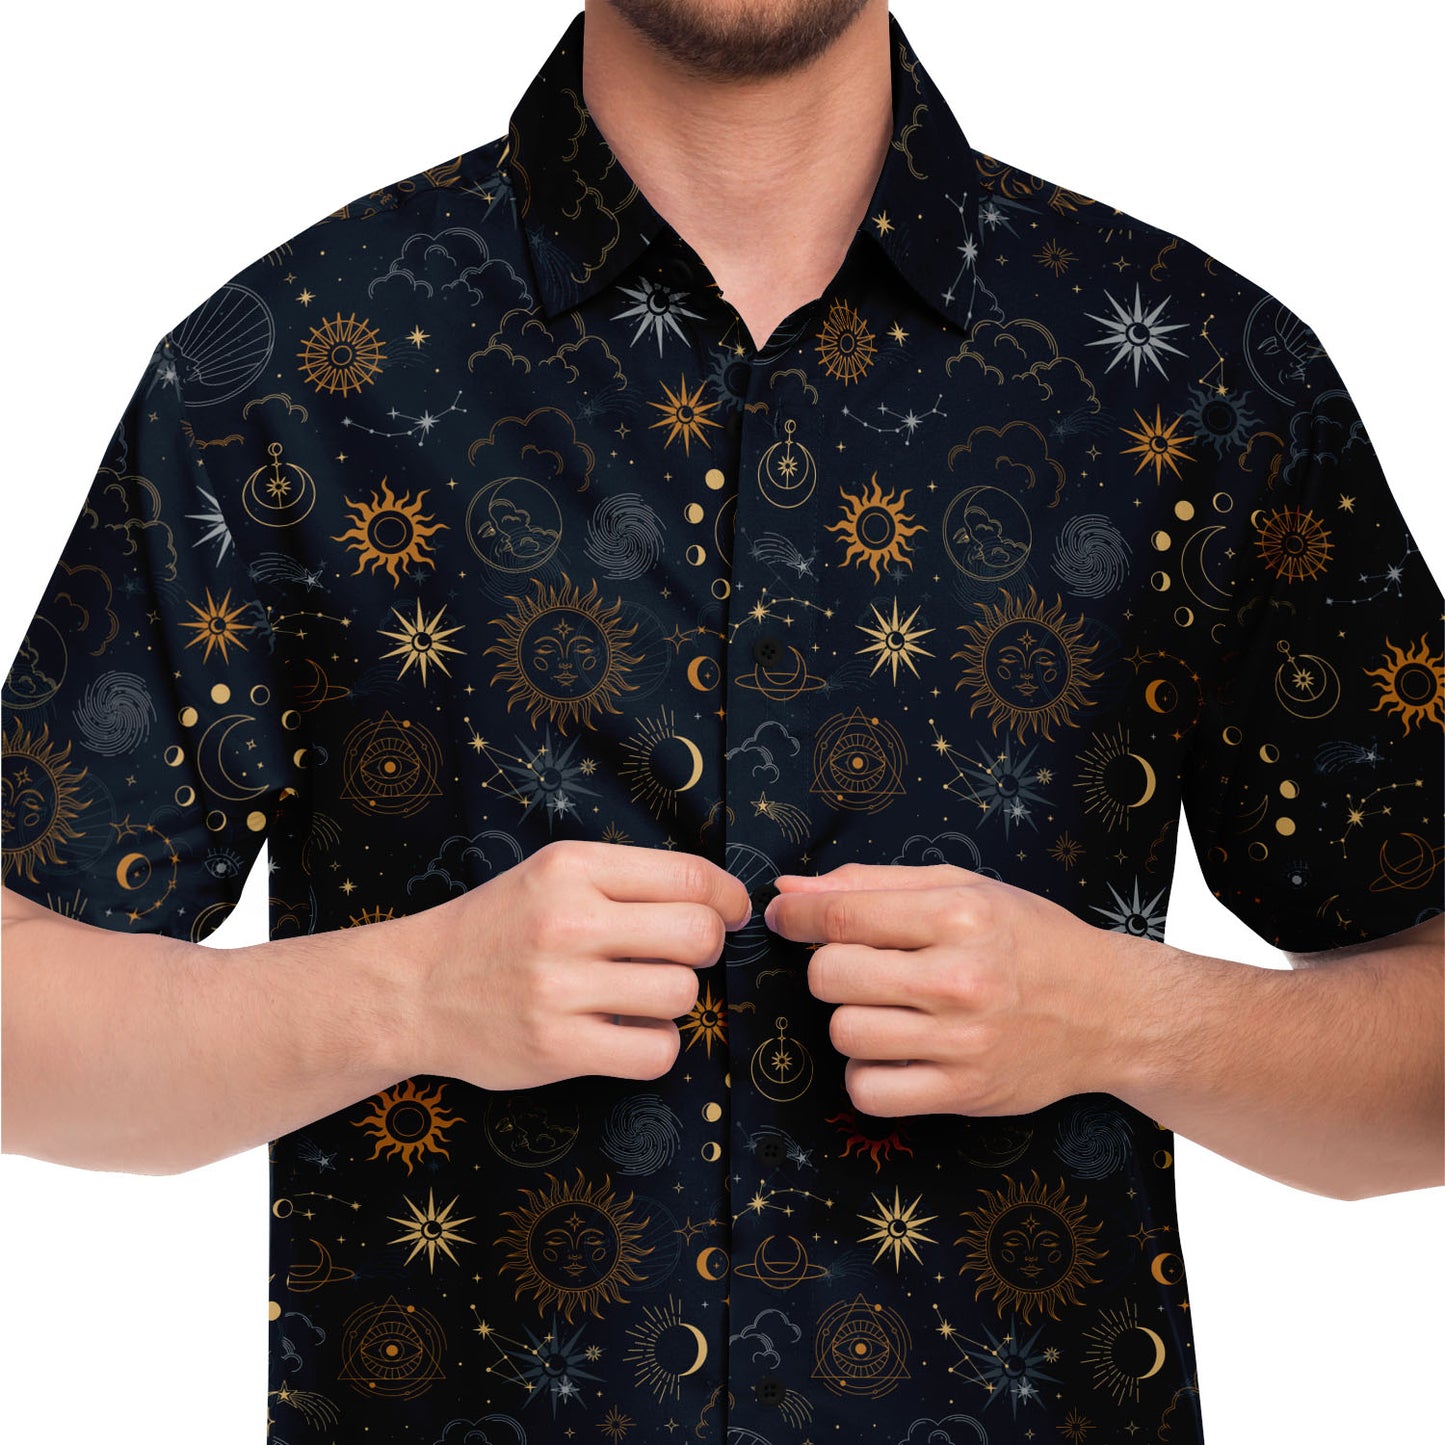 Celestial short sleeve button-up shirt